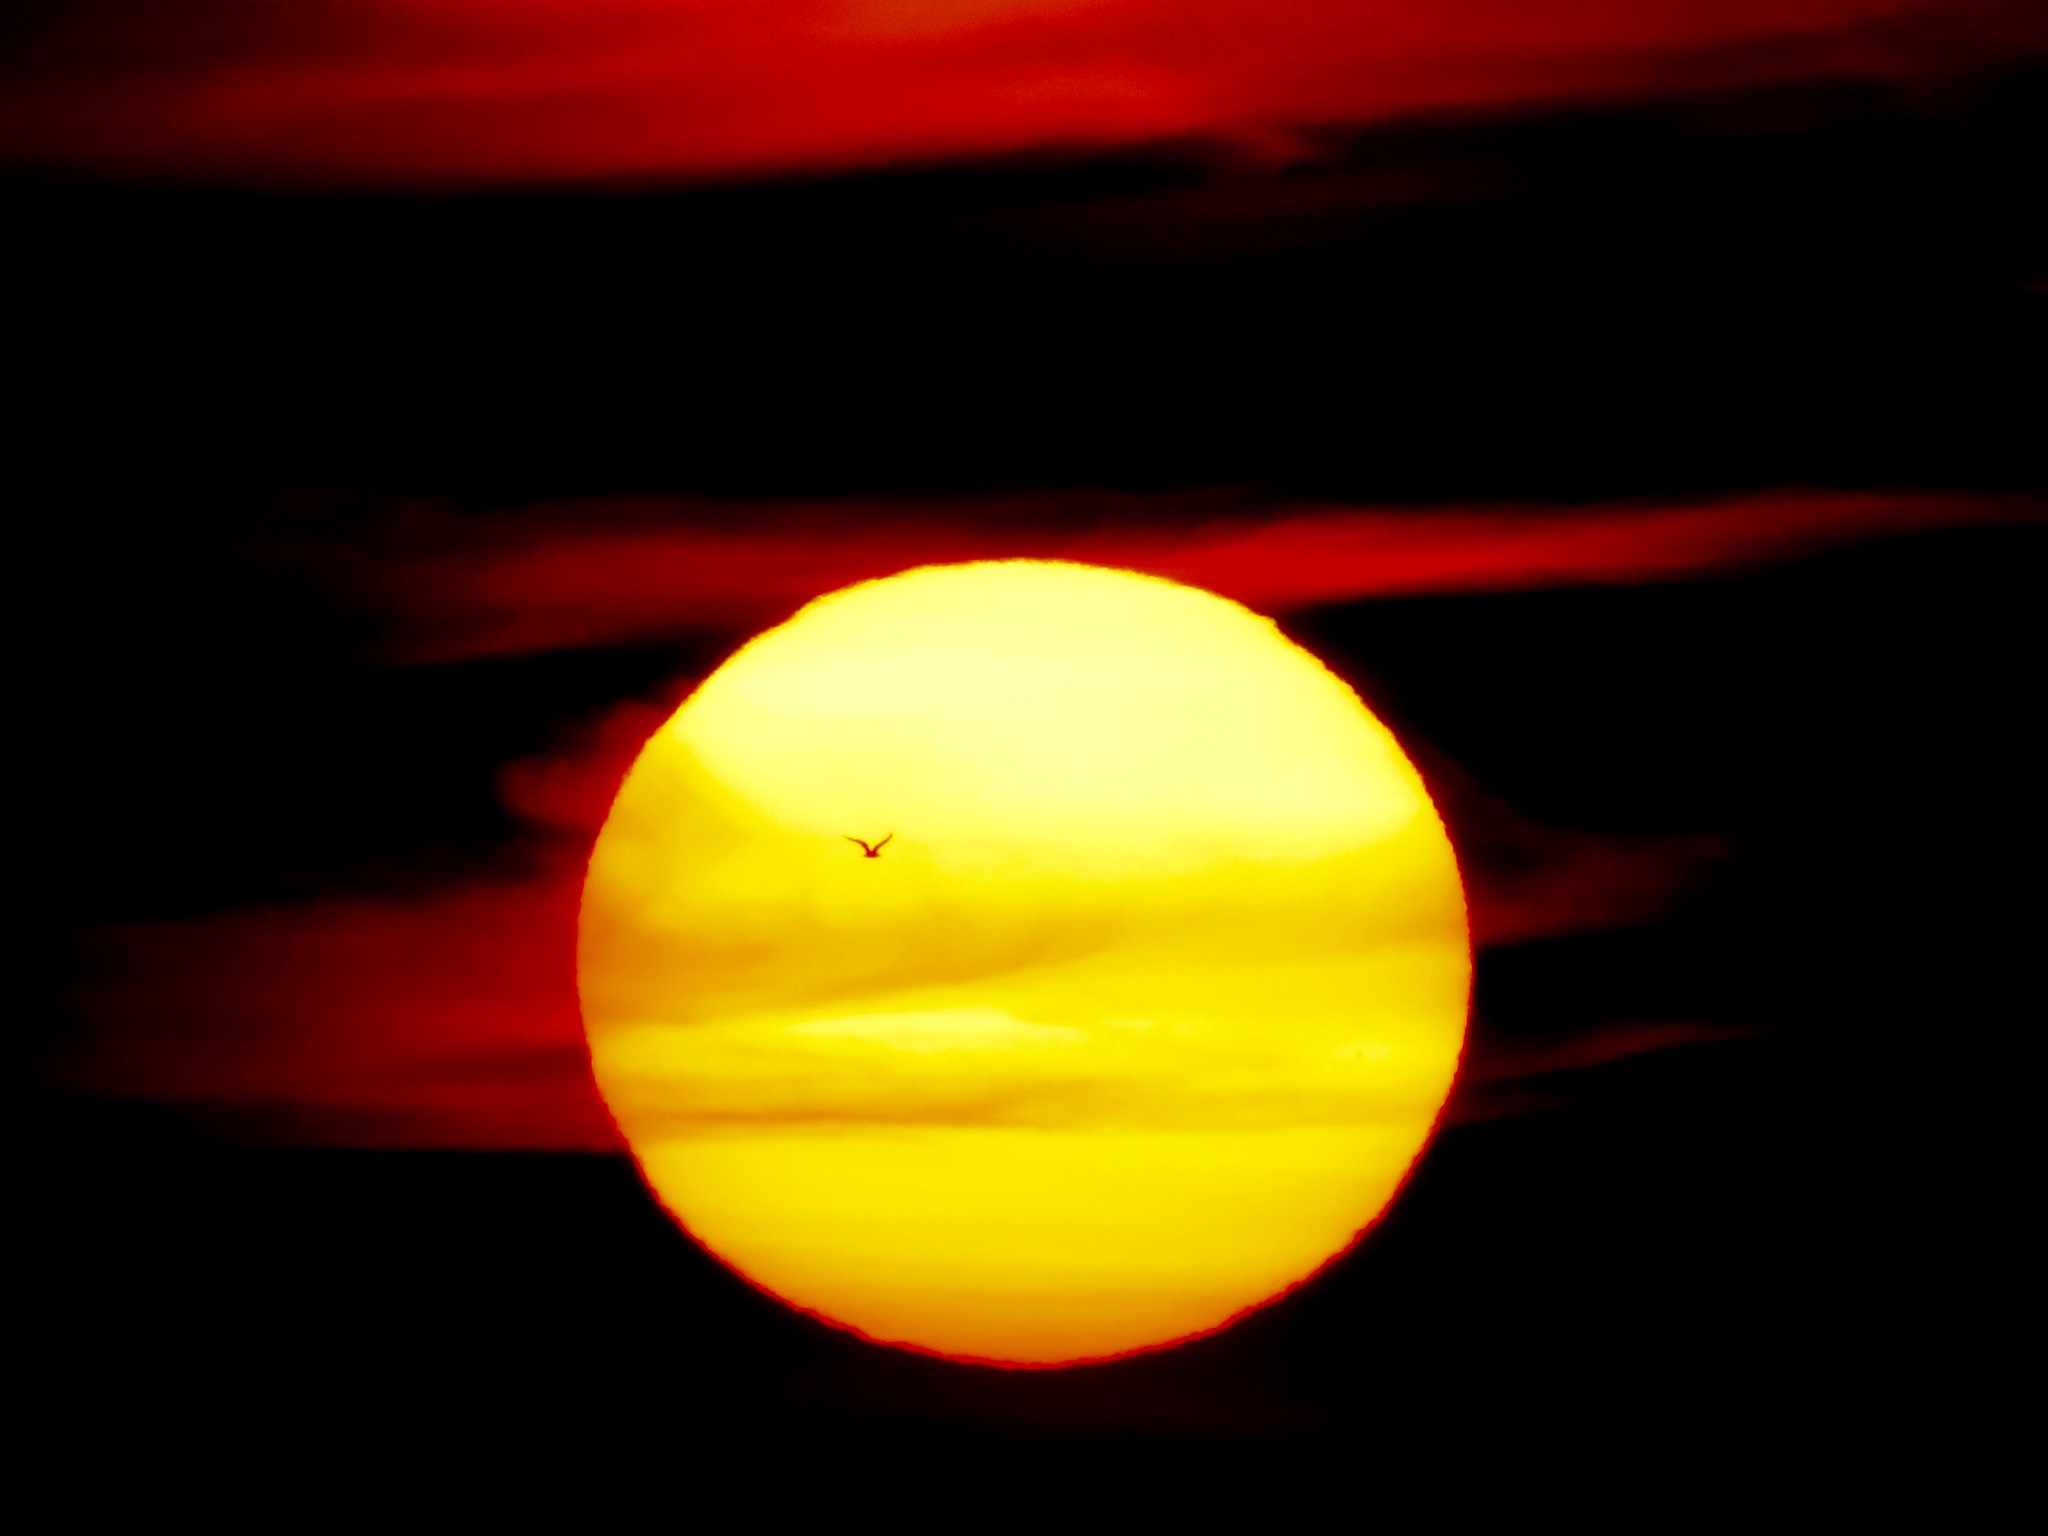 Bird and Large Sun at Sunrise